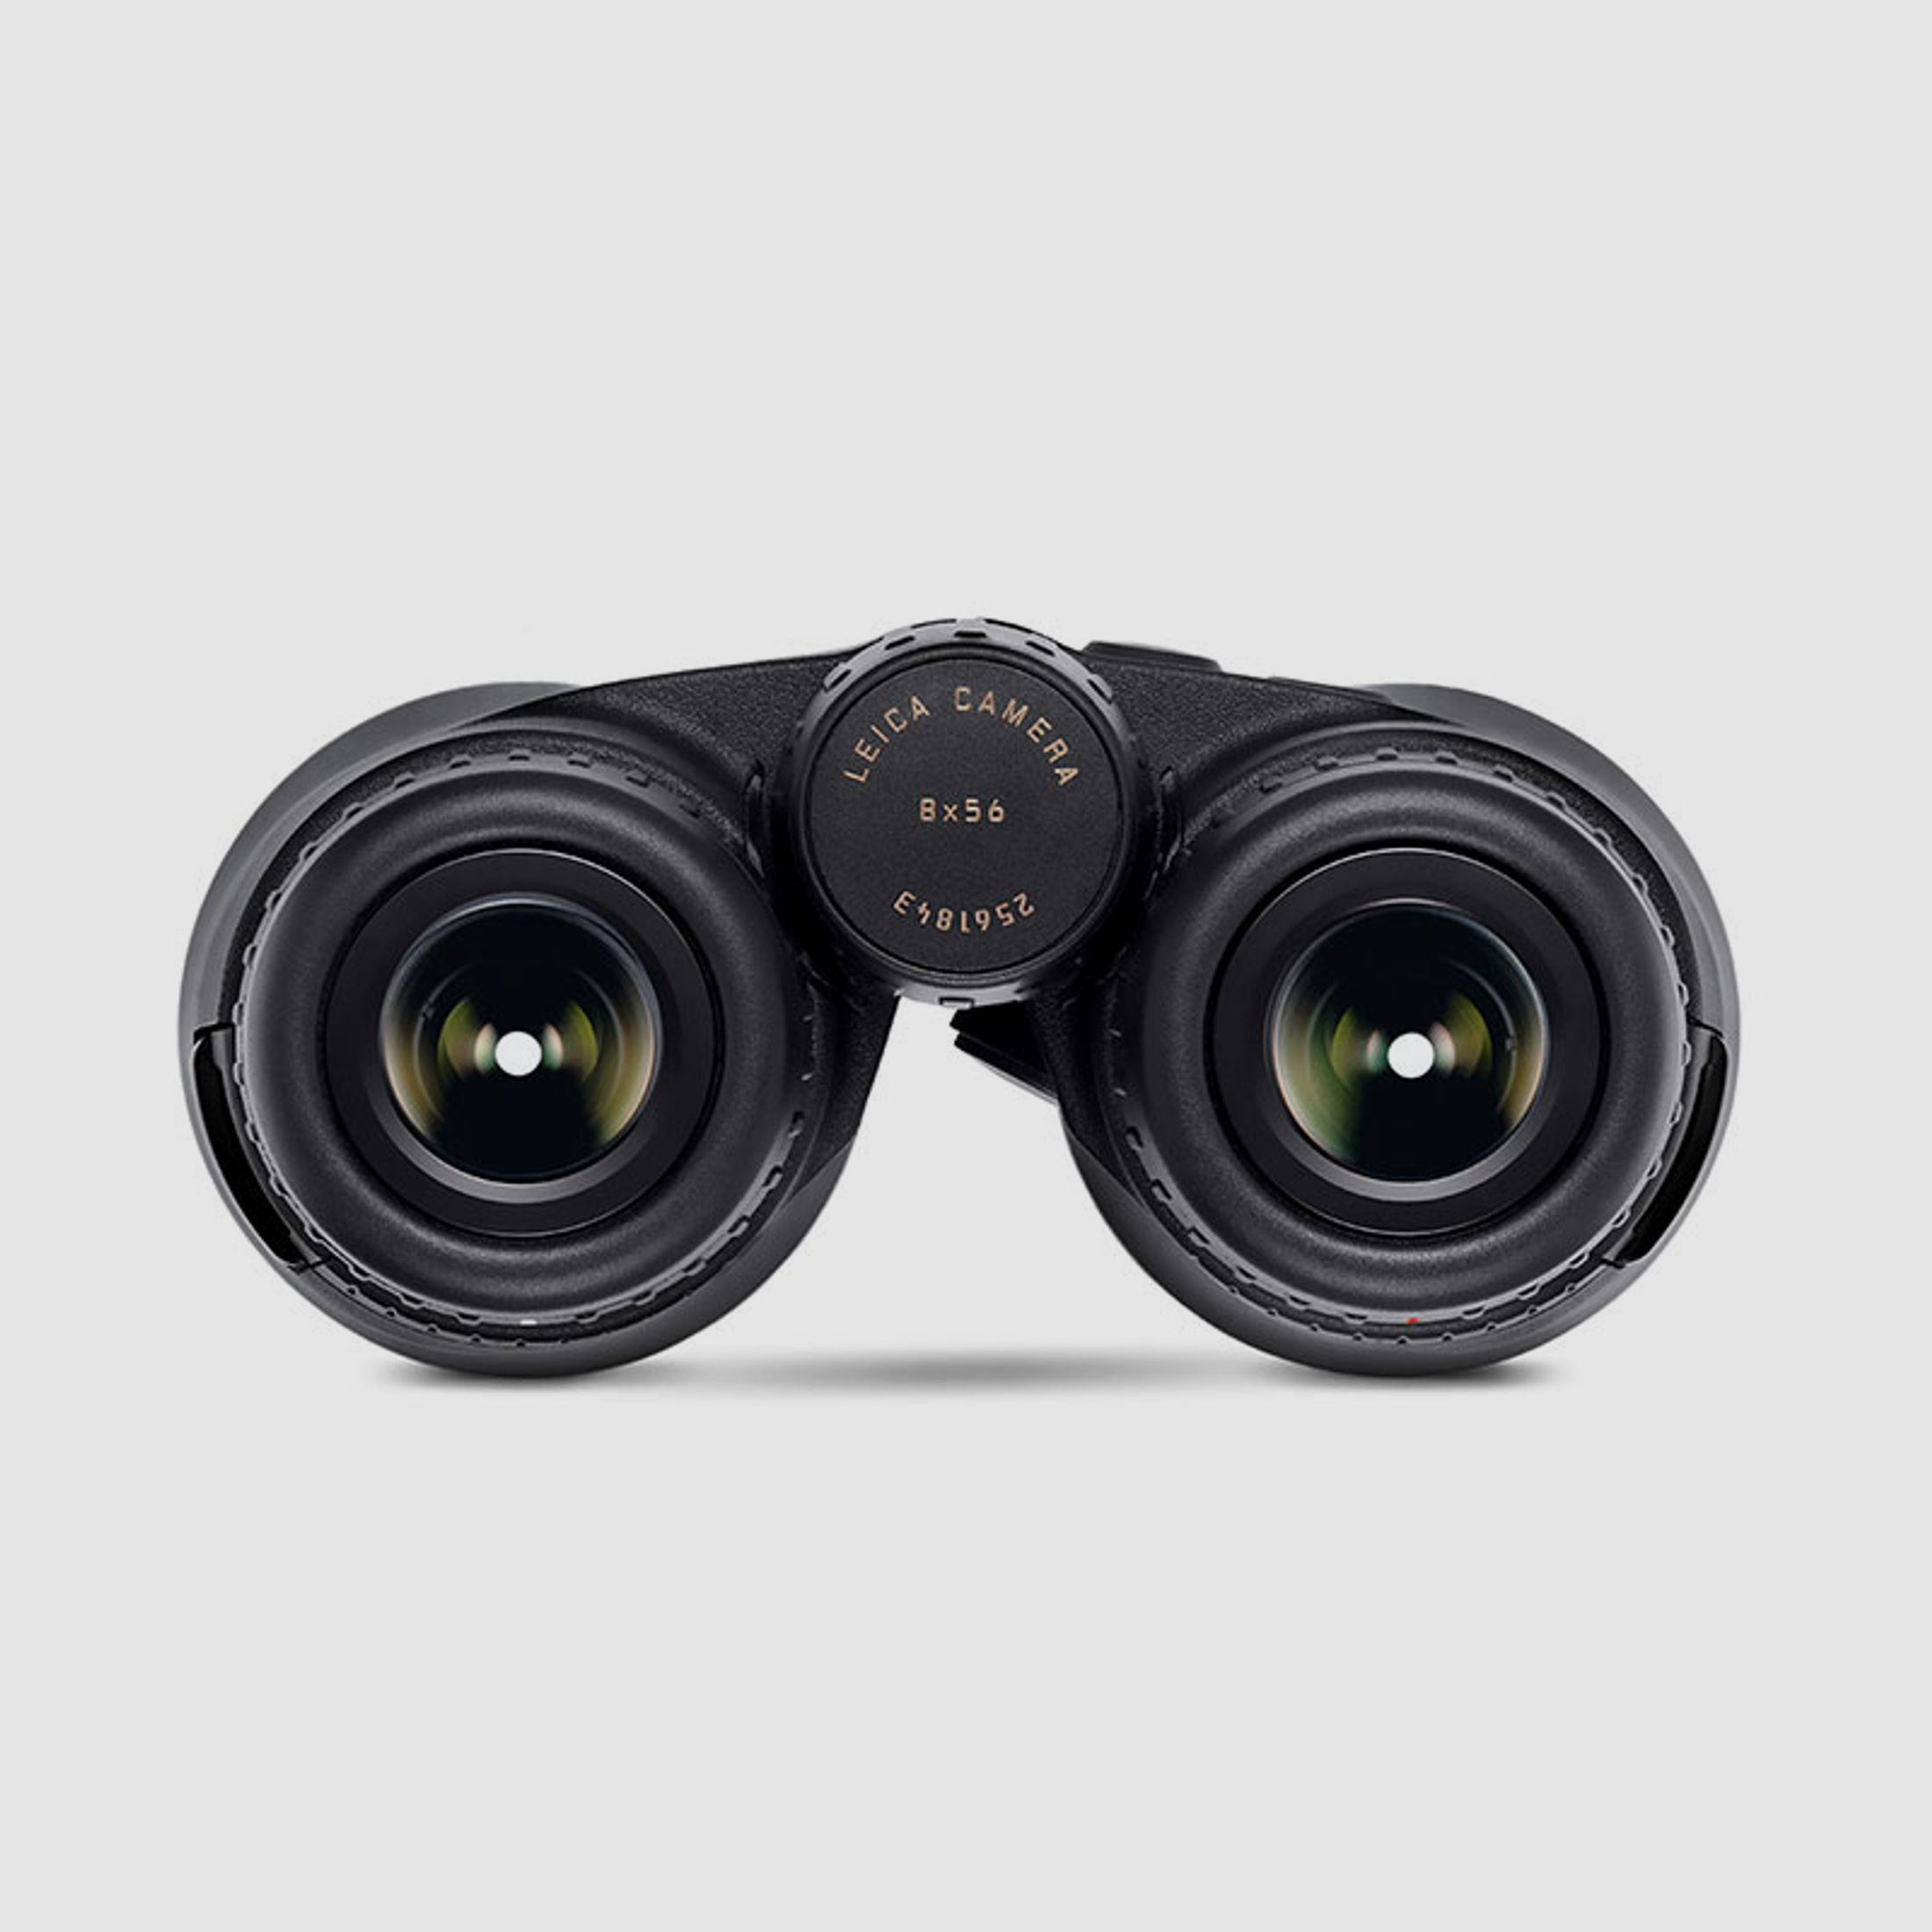 Leica Fernglas Geovid R 8x56